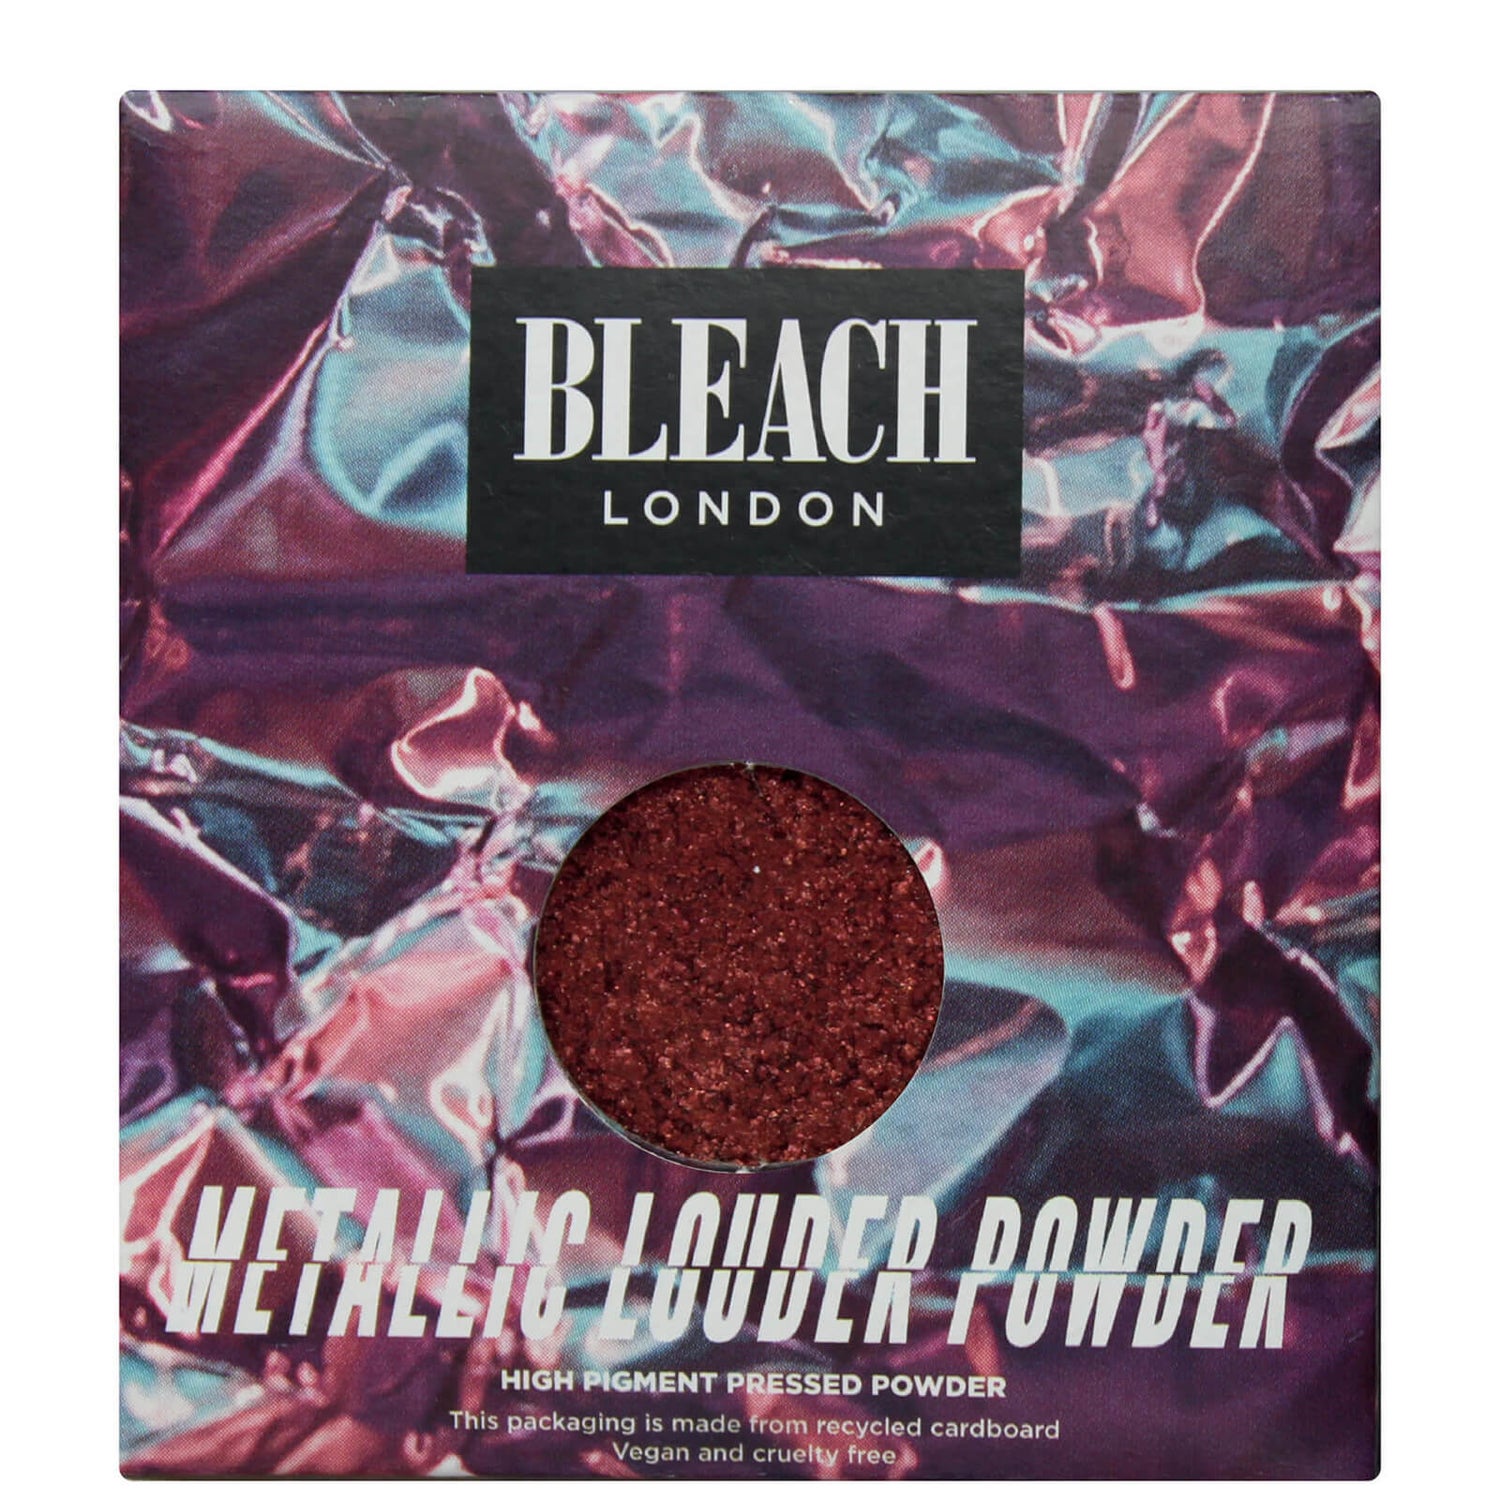 Ombre à paupières Metallic Louder Powder BLEACH LONDON – Isr 4 Me